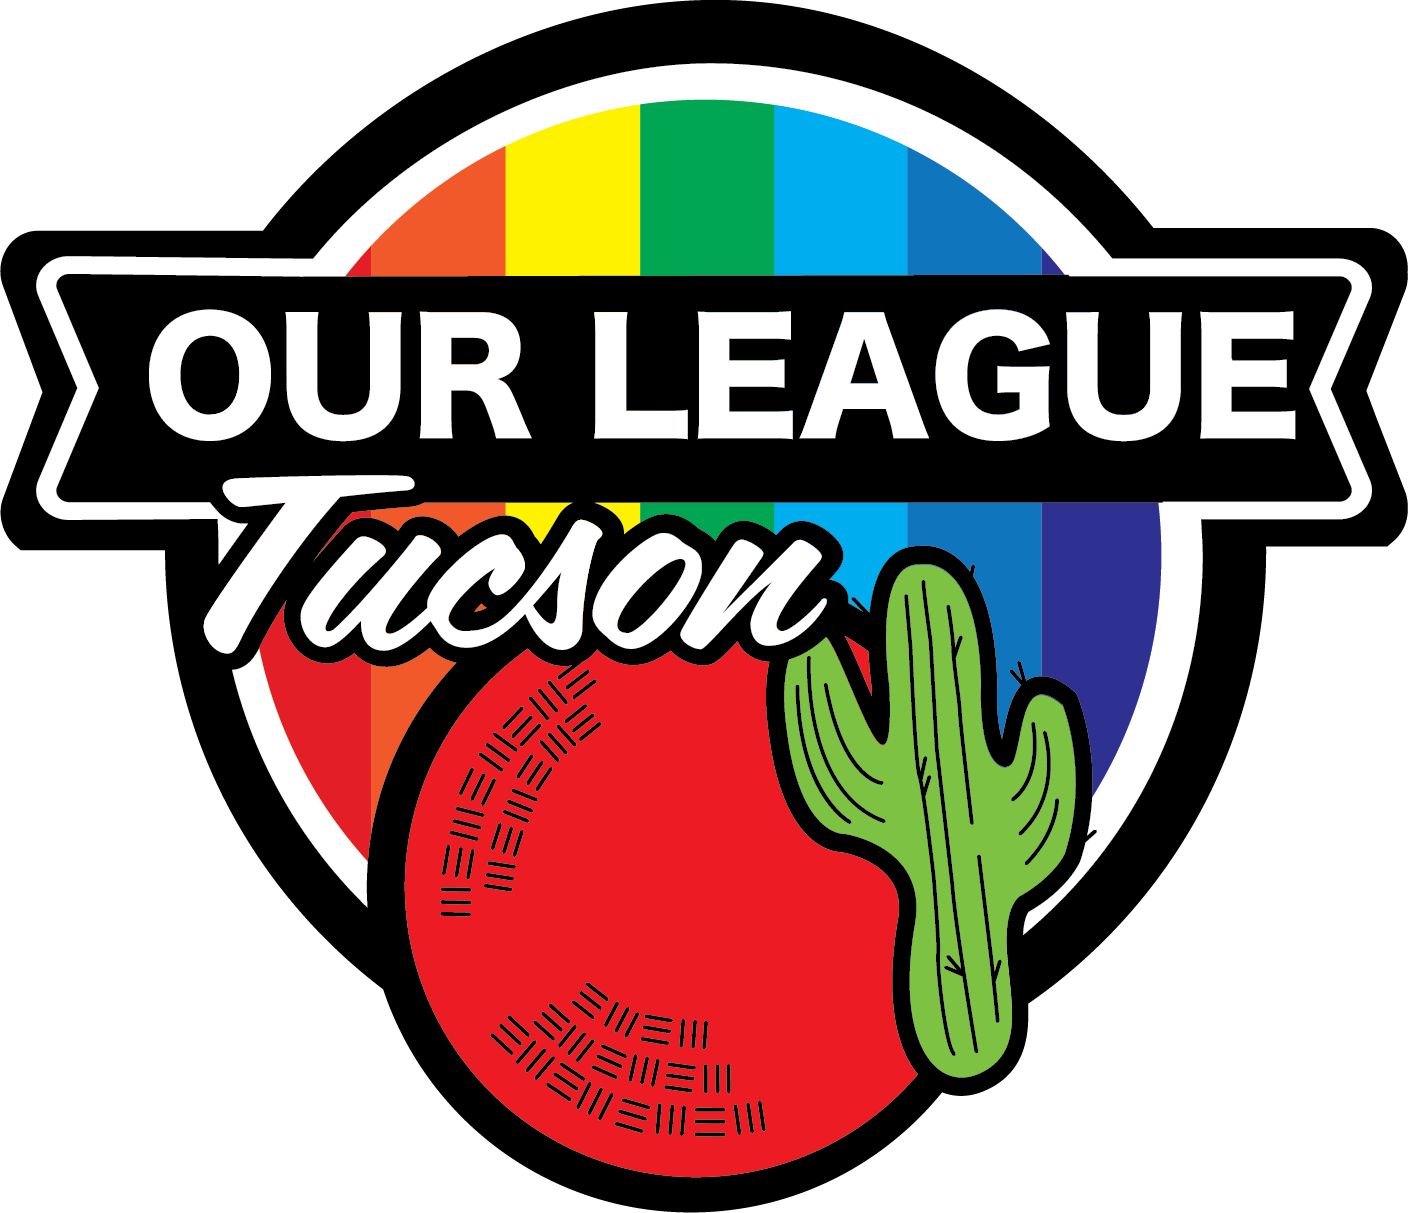 Our League Tucson